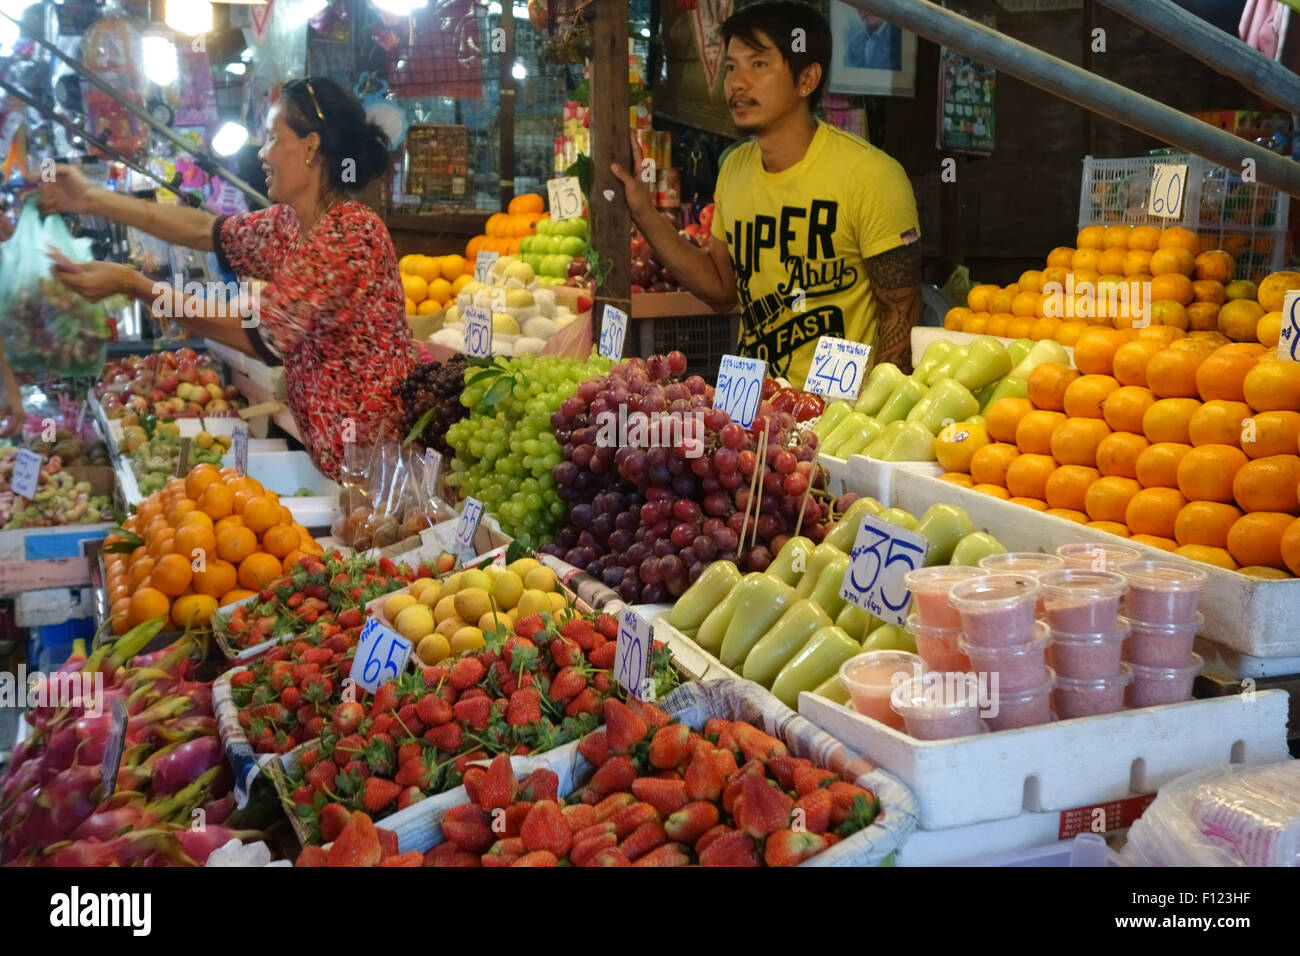 Pressione di stallo di frutta in una Bangkok mercato alimentare con prezzi in baht tailandese e una donna che serve i clienti, Thailandia Foto Stock